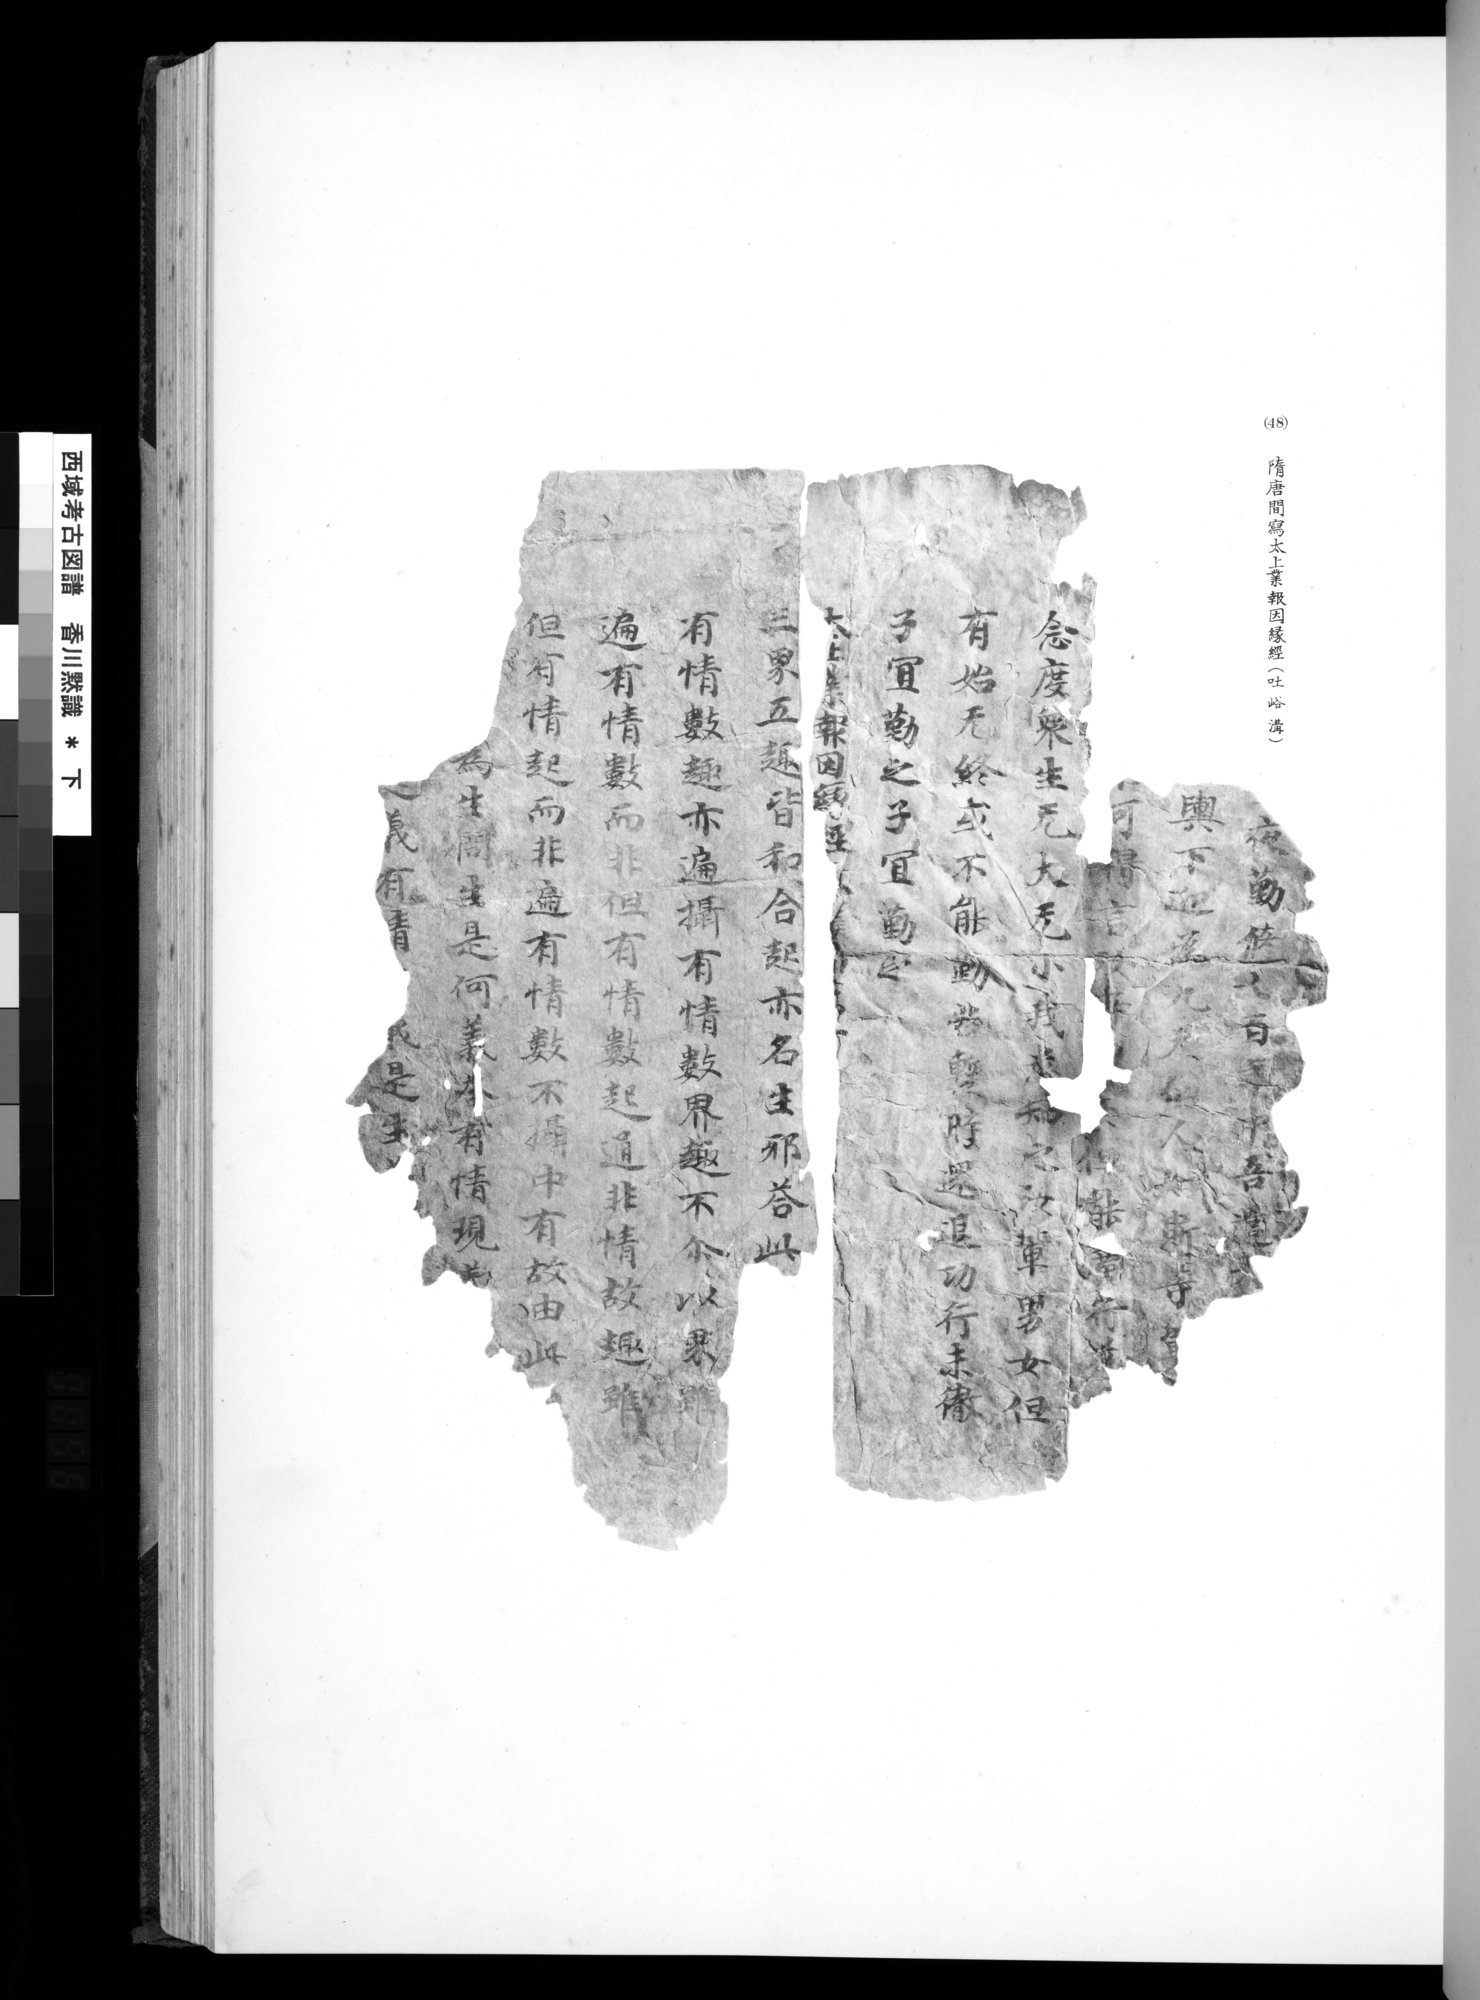 西域考古図譜 : vol.2 / 111 ページ（白黒高解像度画像）